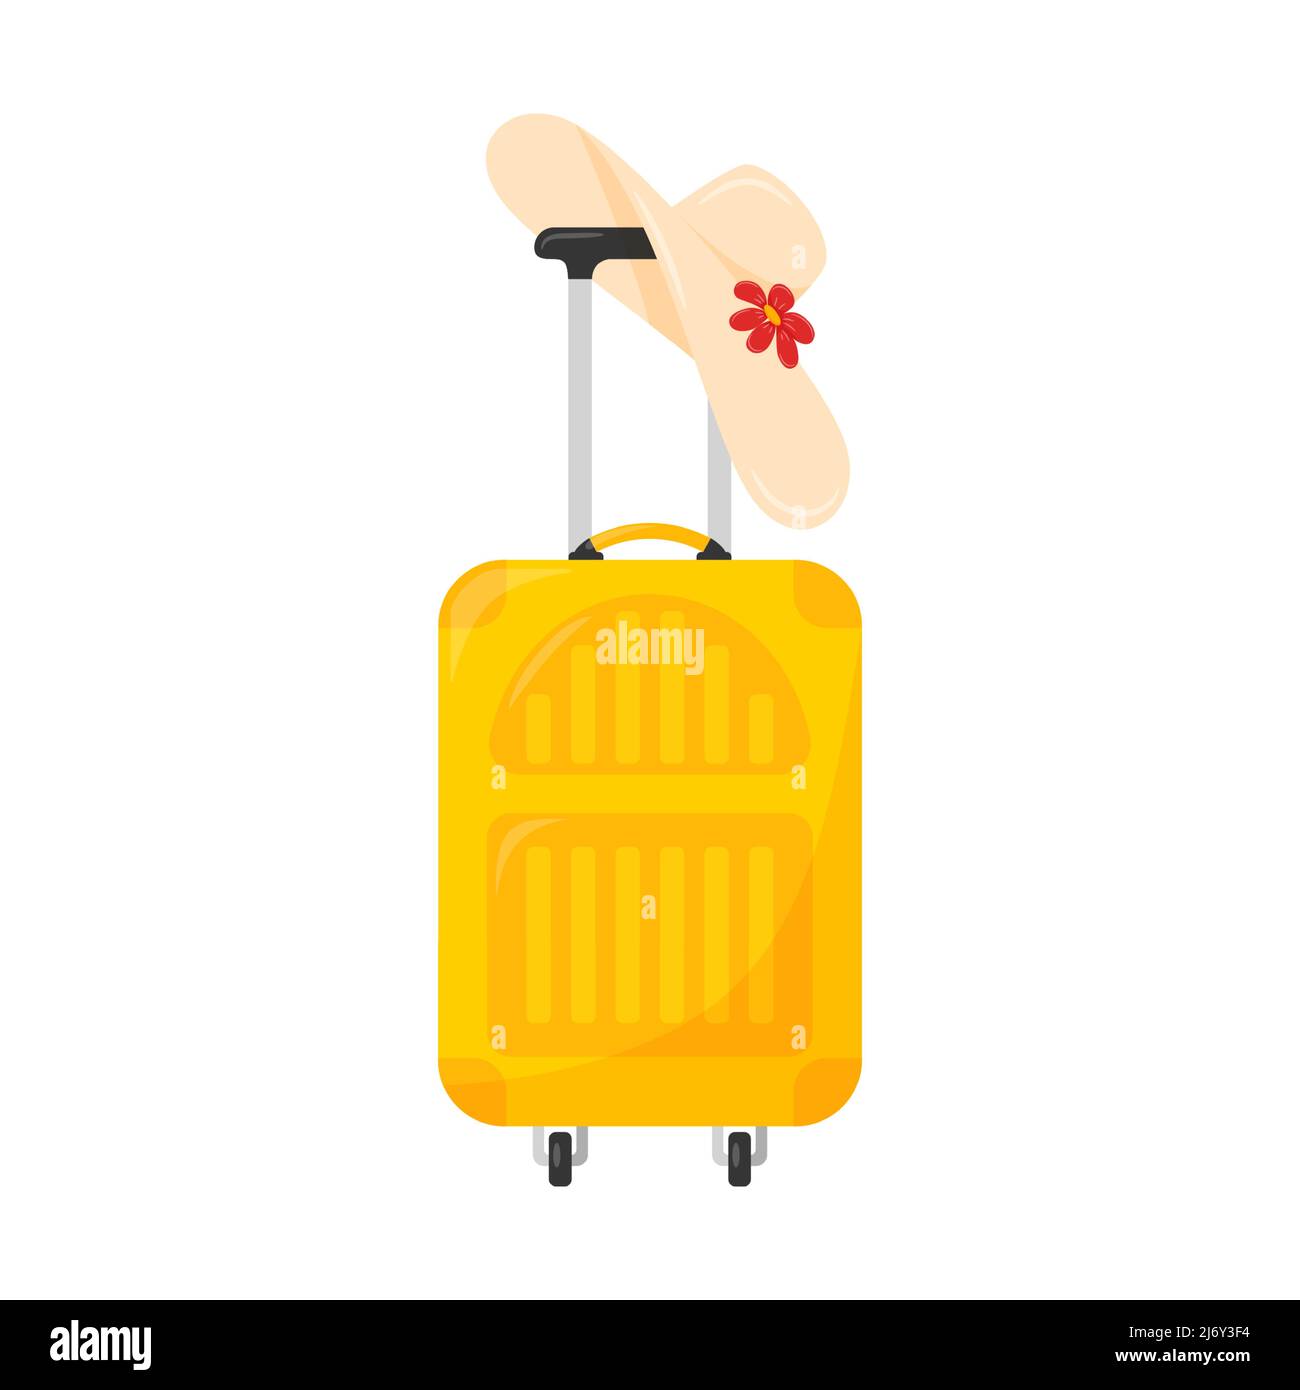 Gelber geschlossener Koffer auf Rädern. Stehend, mit einem Frauenhut, der am Griff hängt. Ein Symbol für Reisen, Sommer, Urlaub. Ein helles Designelement. F Stock Vektor